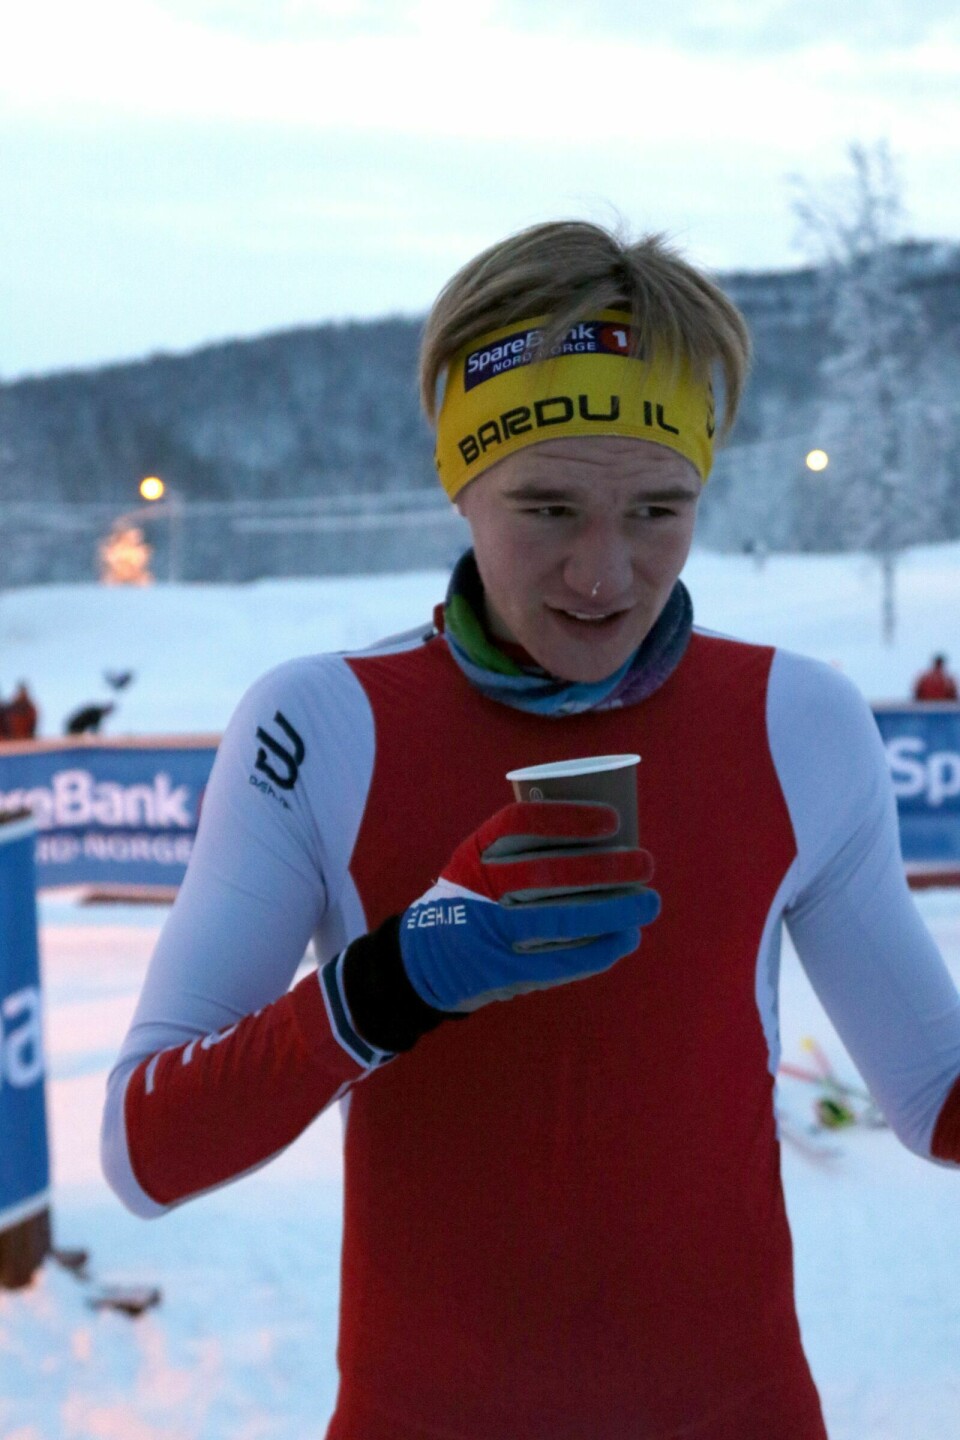 NESTEN PALL: Jonas Fuglem fra Bardu syntes det var svært kaldt da han gikk inn til en 4. plass lørdag. Foto: Ivar Løvland